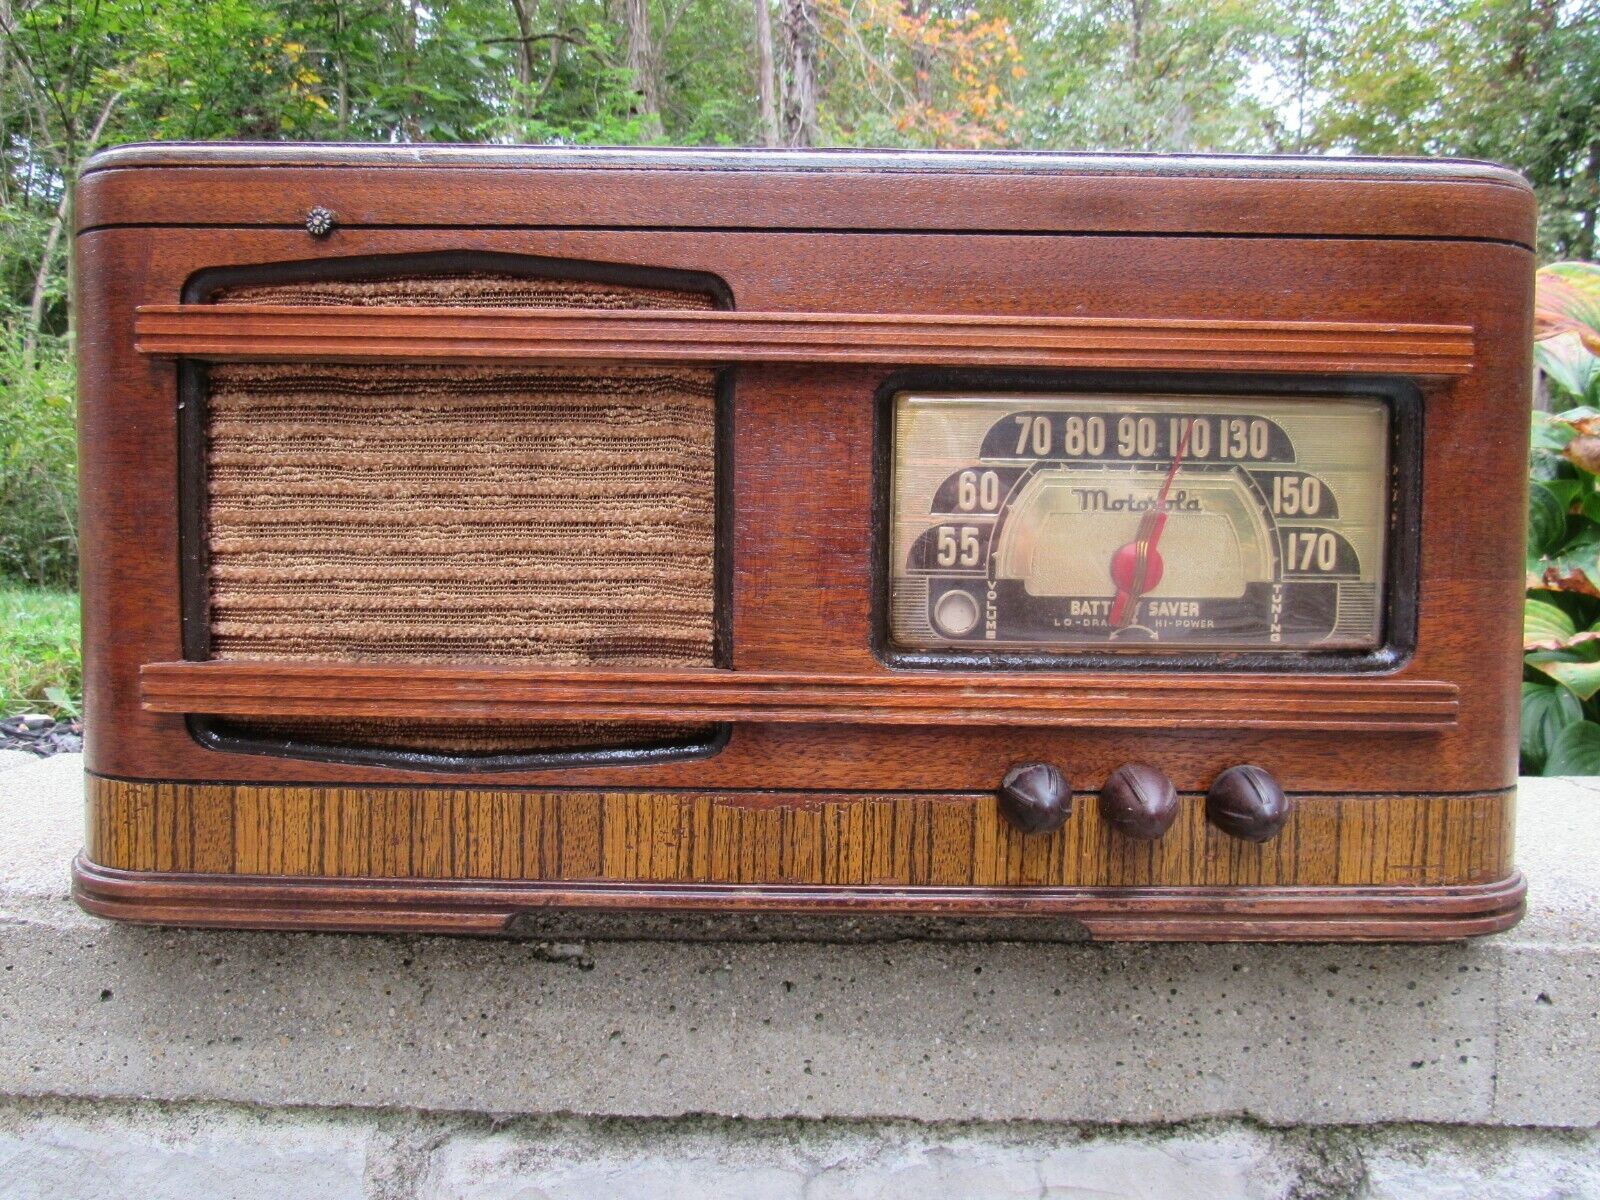 Motorola Battery Saver wood tube radio bakelite knobs vintage RARE & BEAUTIFUL